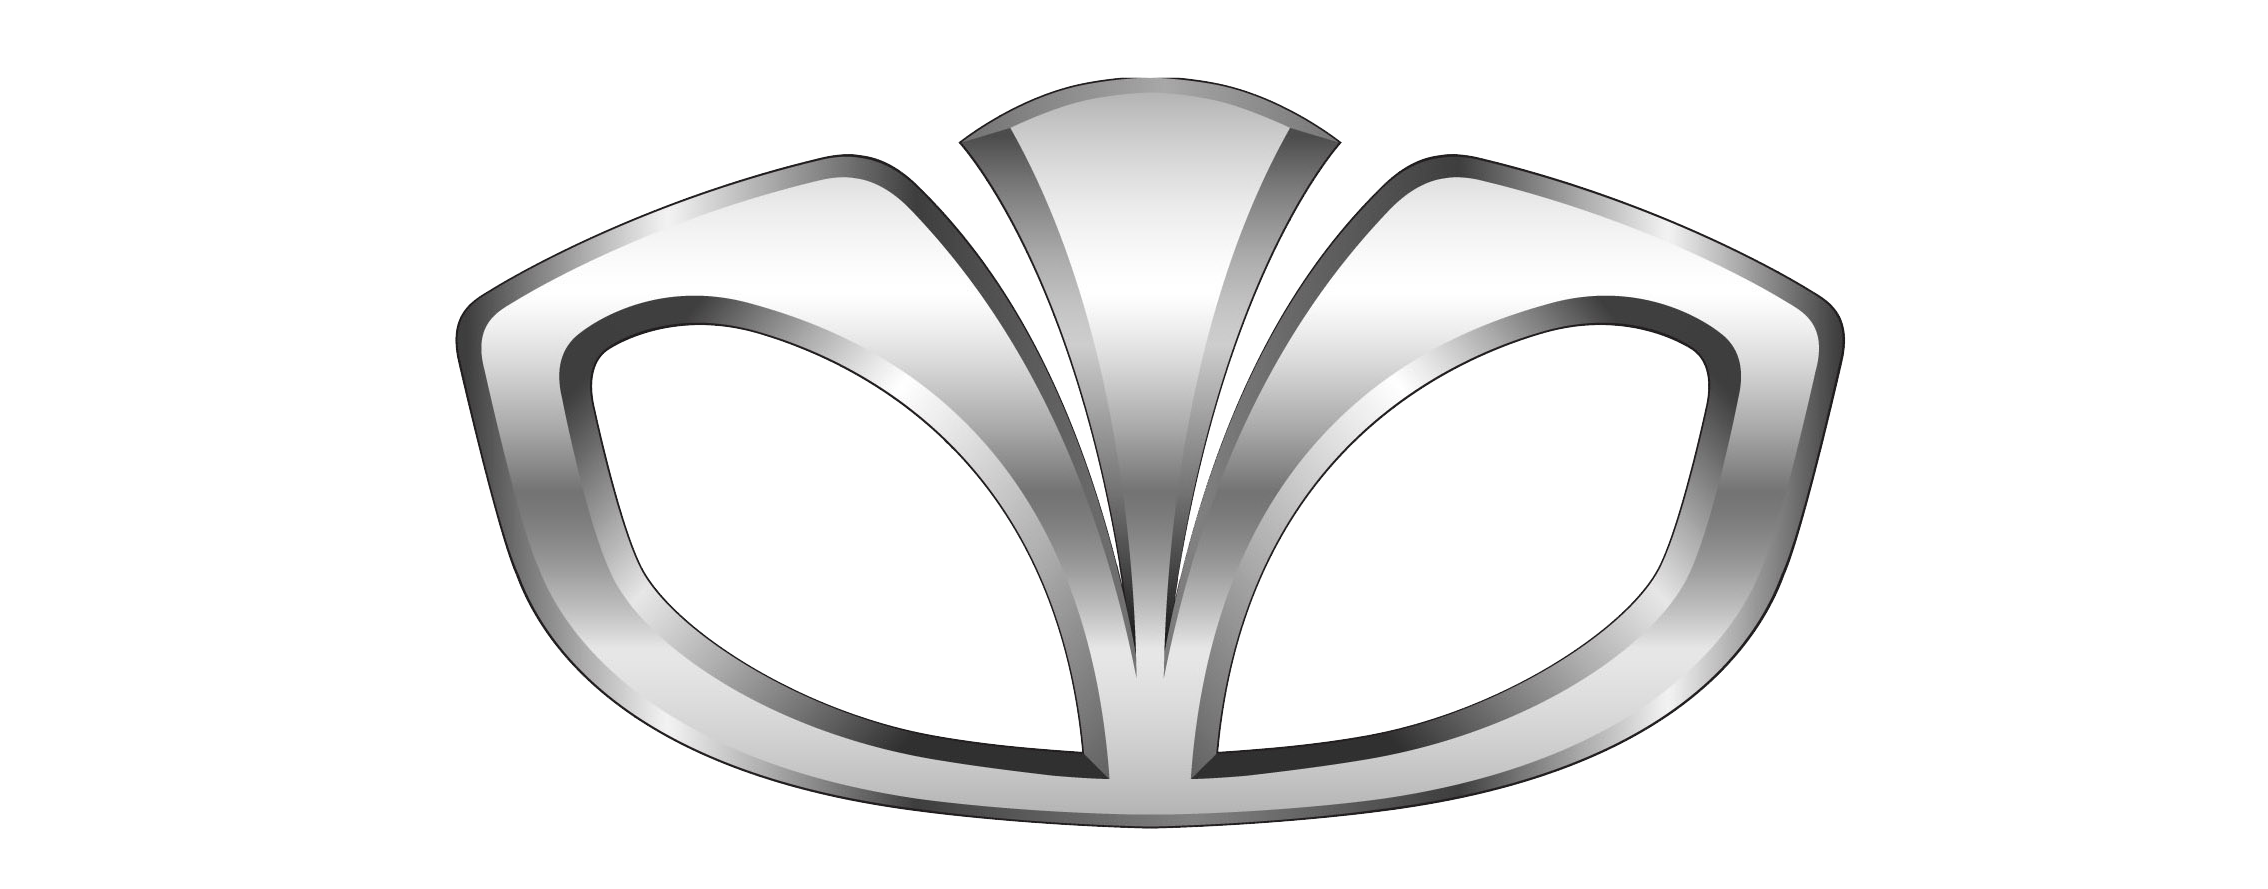 Daewoo logo PNG